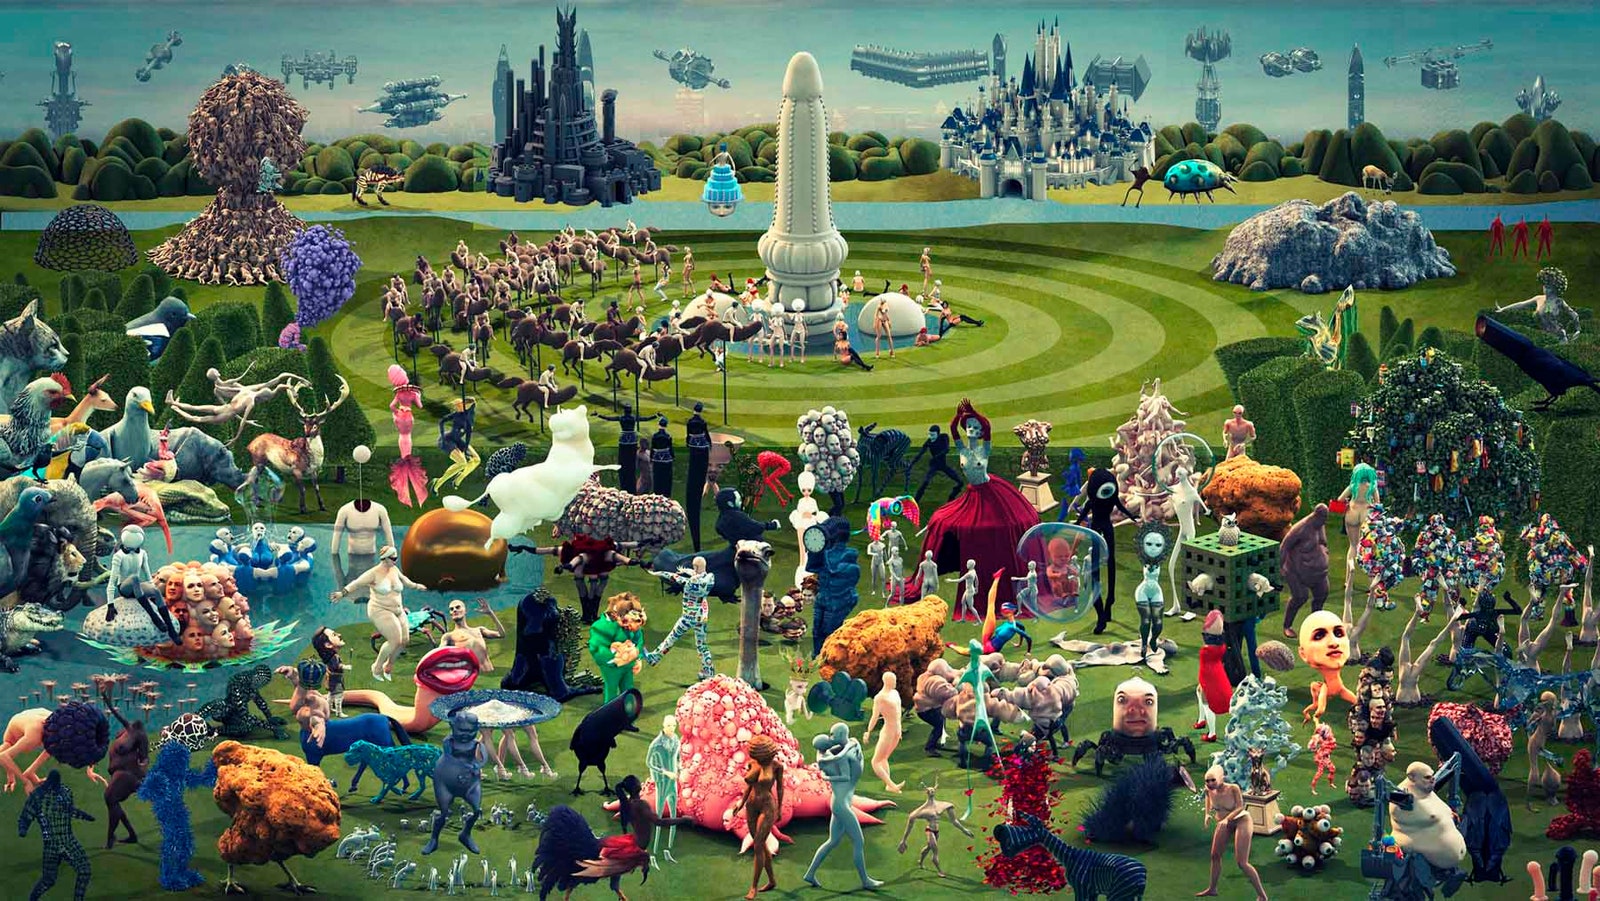 Illustration sur le thème "jardin des délices" avec des couleurs vives et des personnages fantastiques